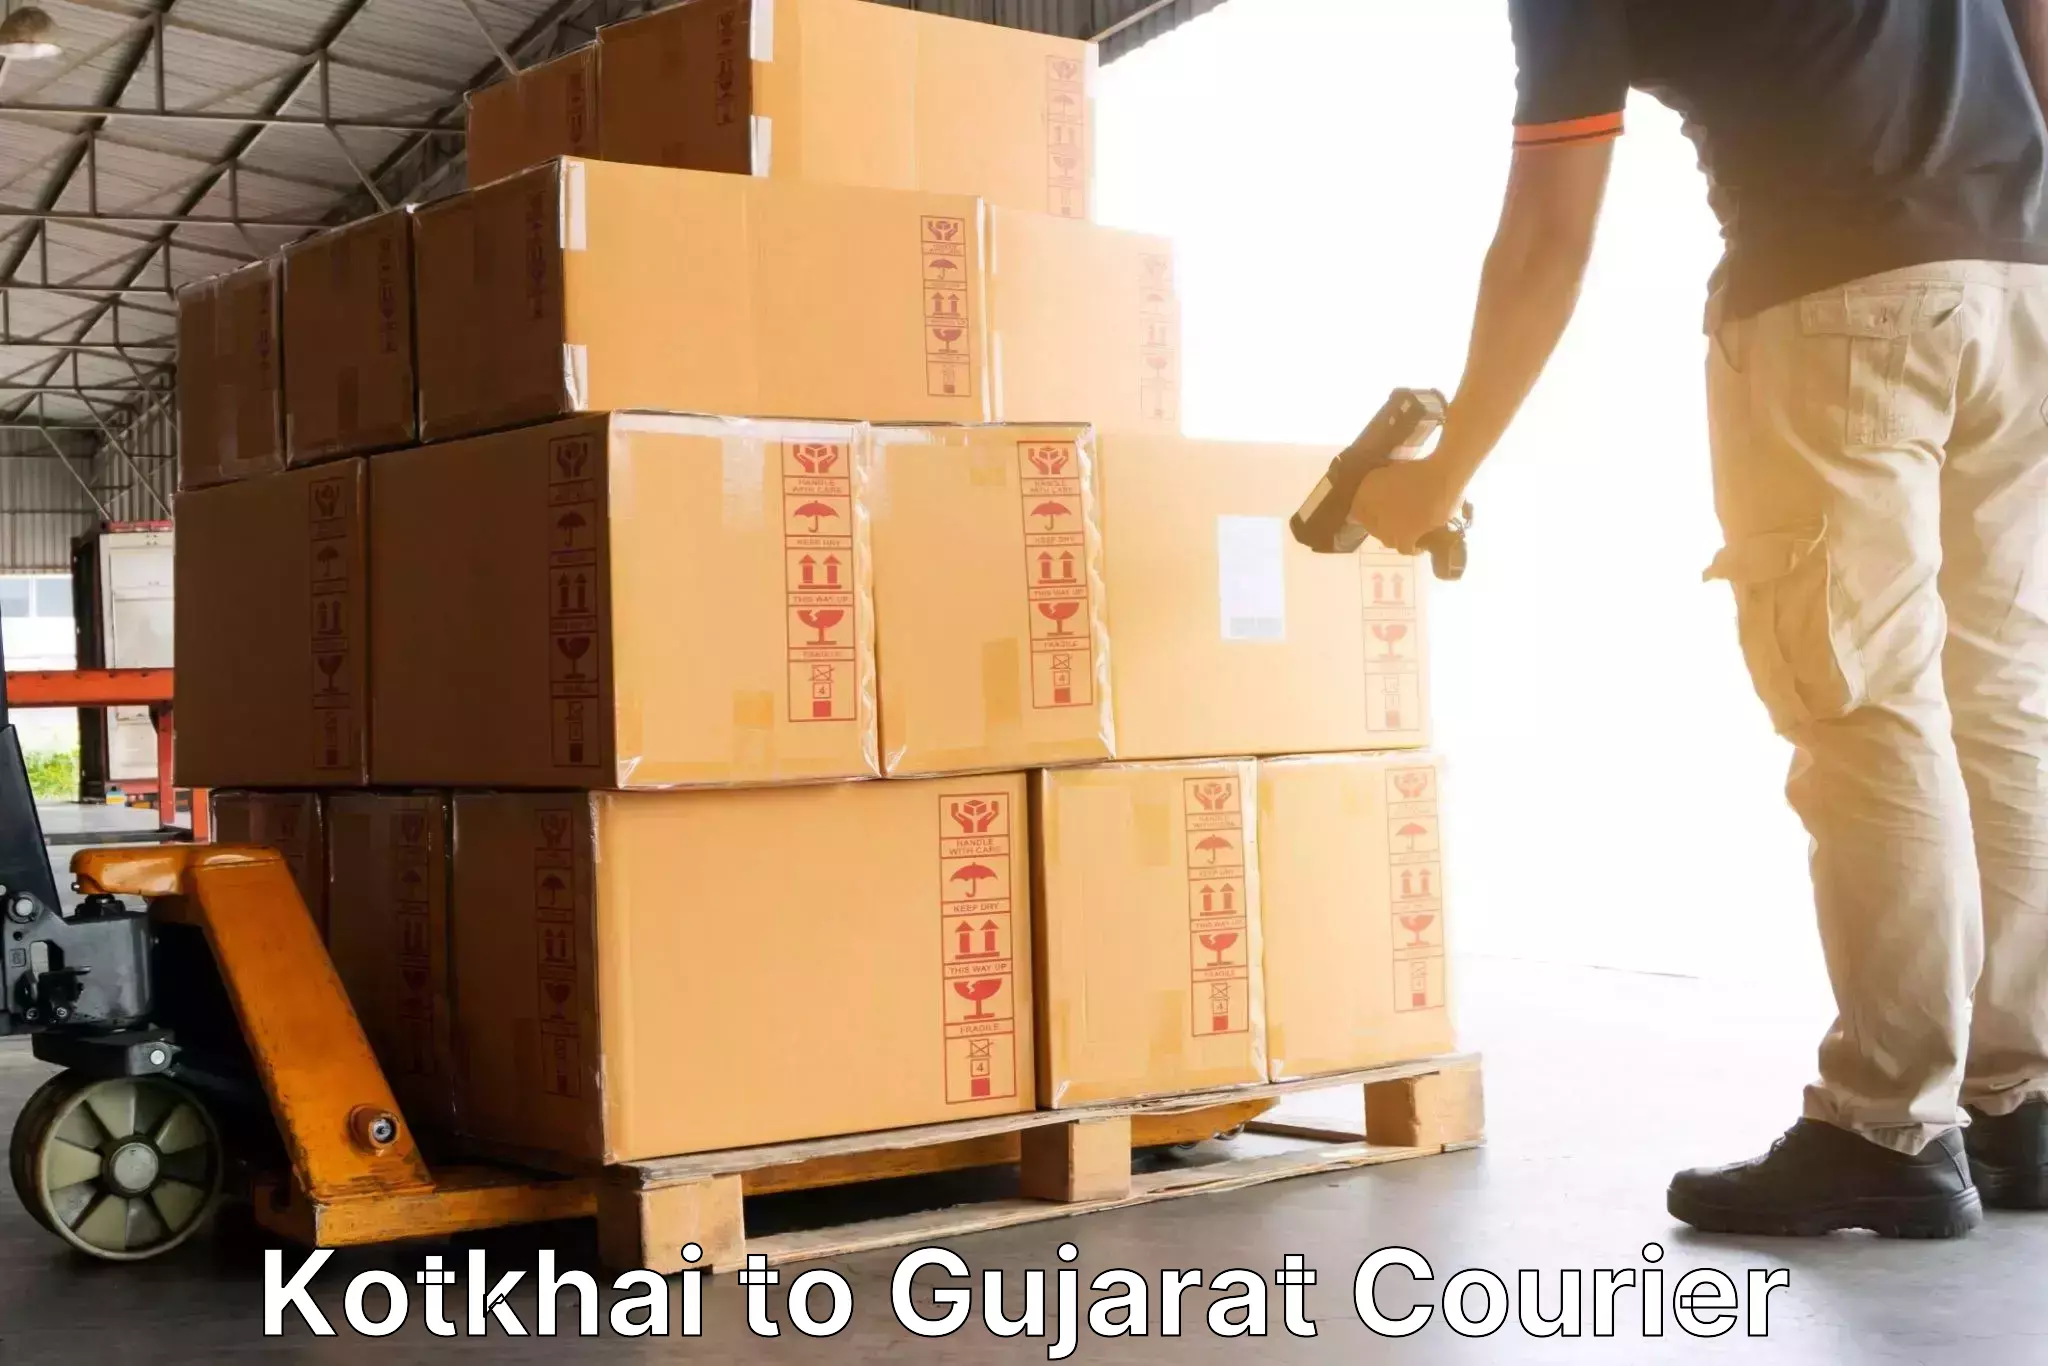 Nationwide parcel services Kotkhai to Gujarat